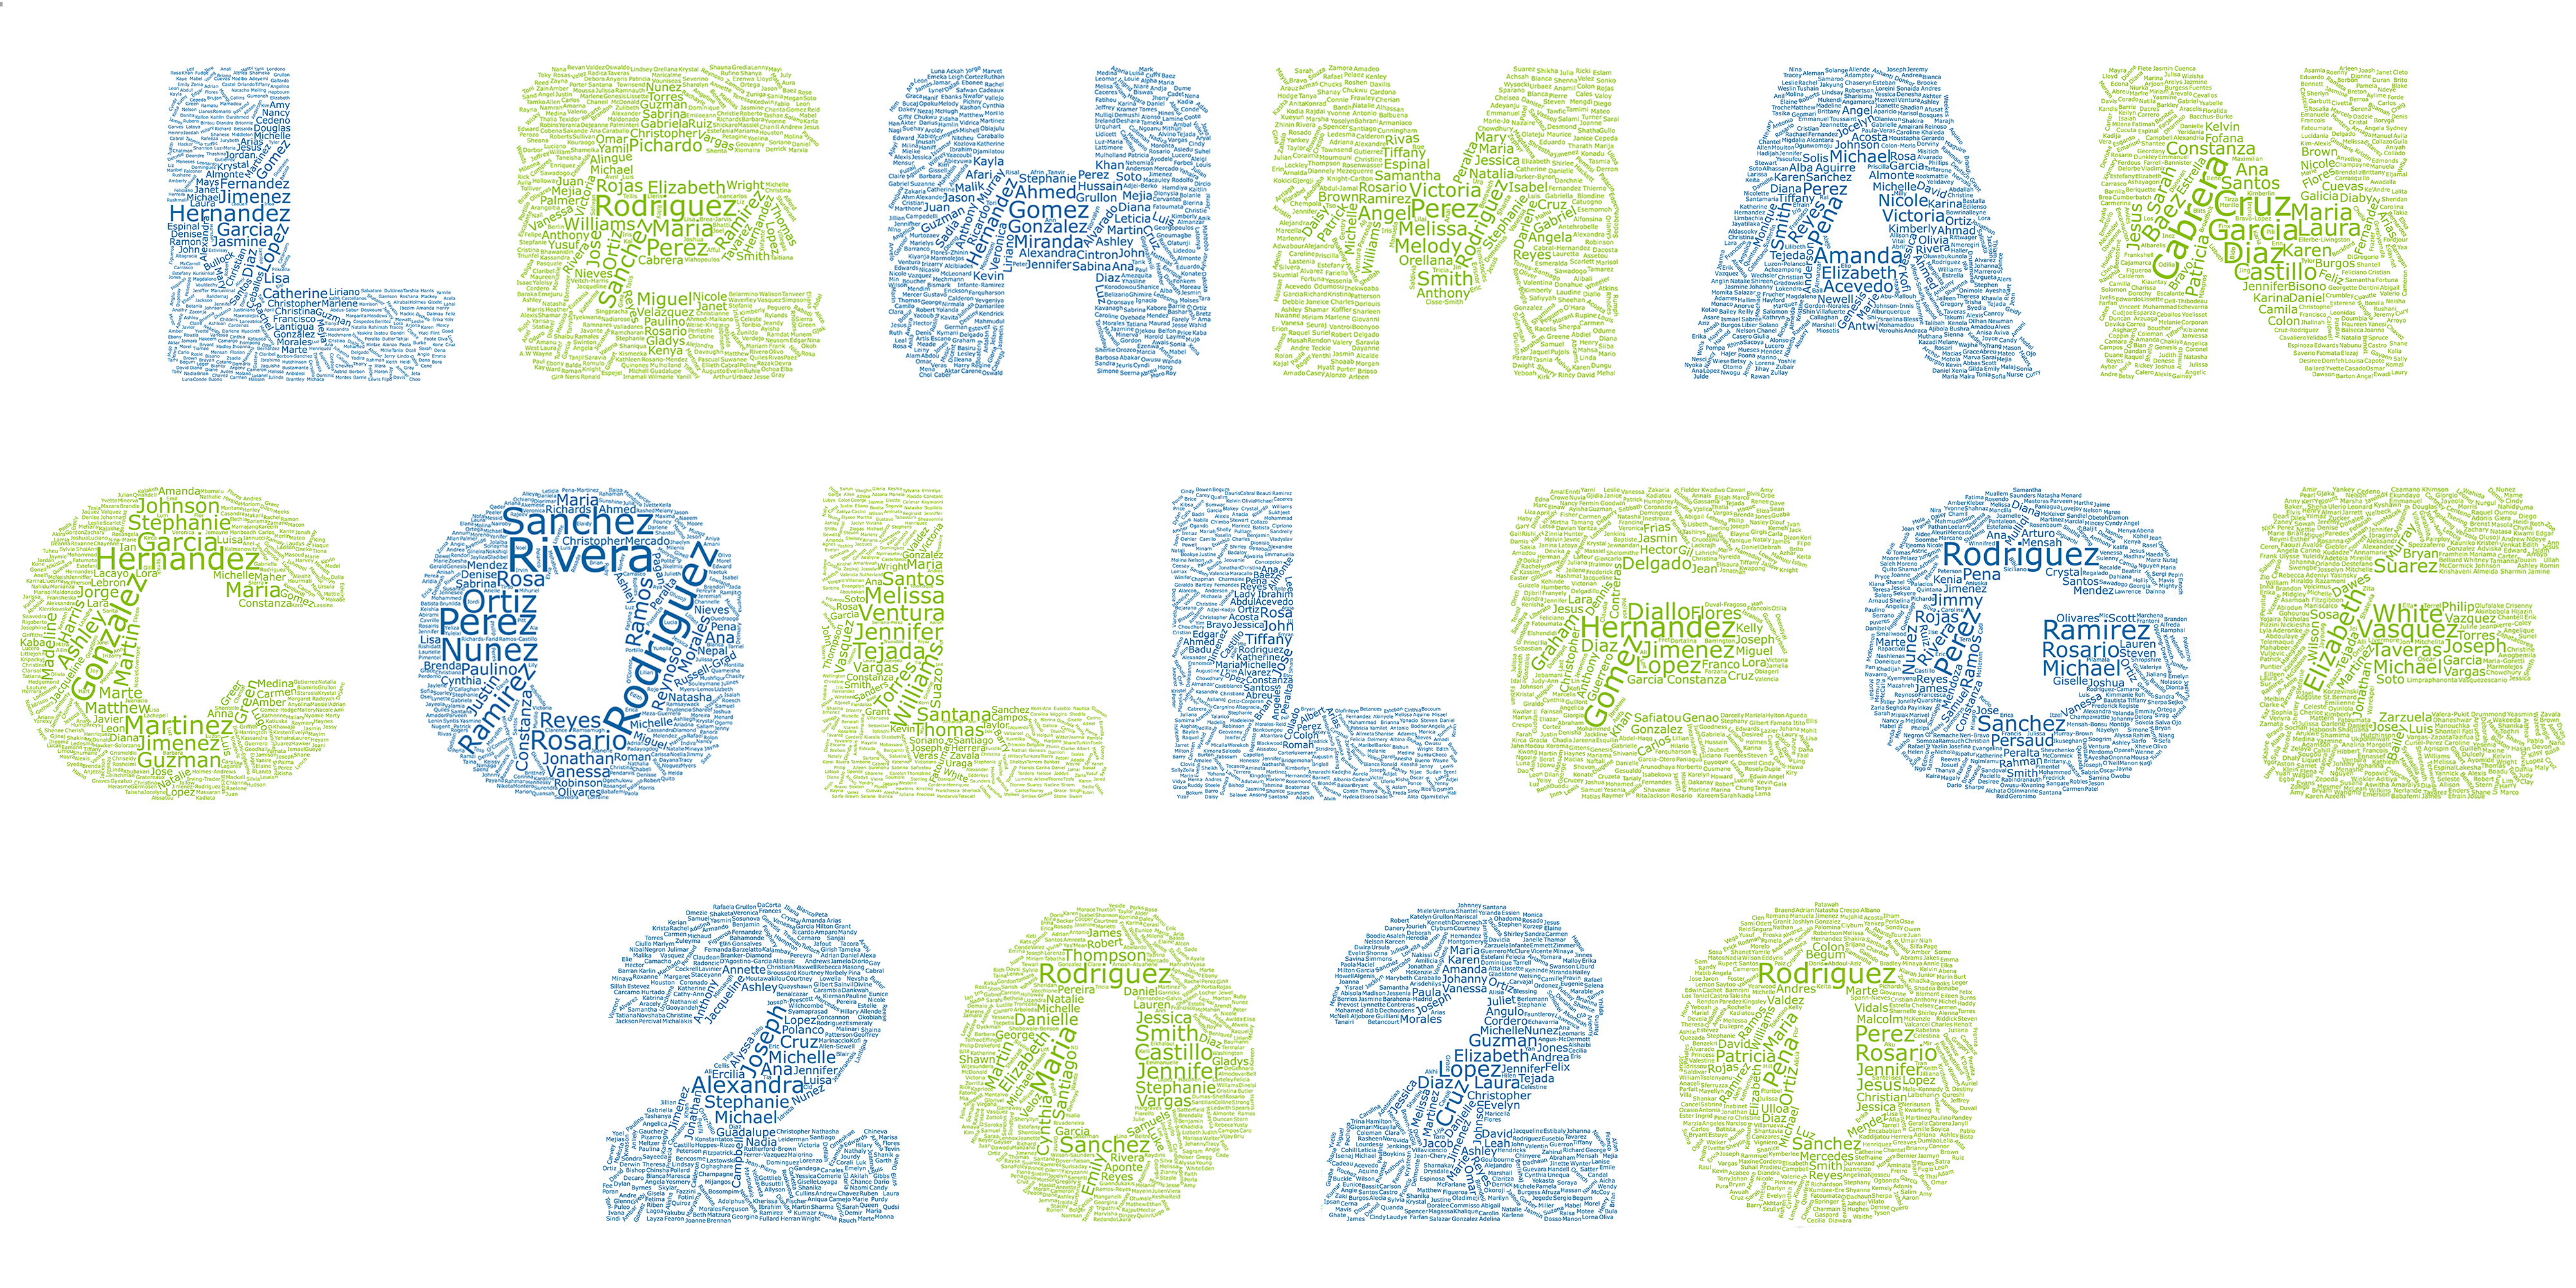 Lehman College - Class of 2020